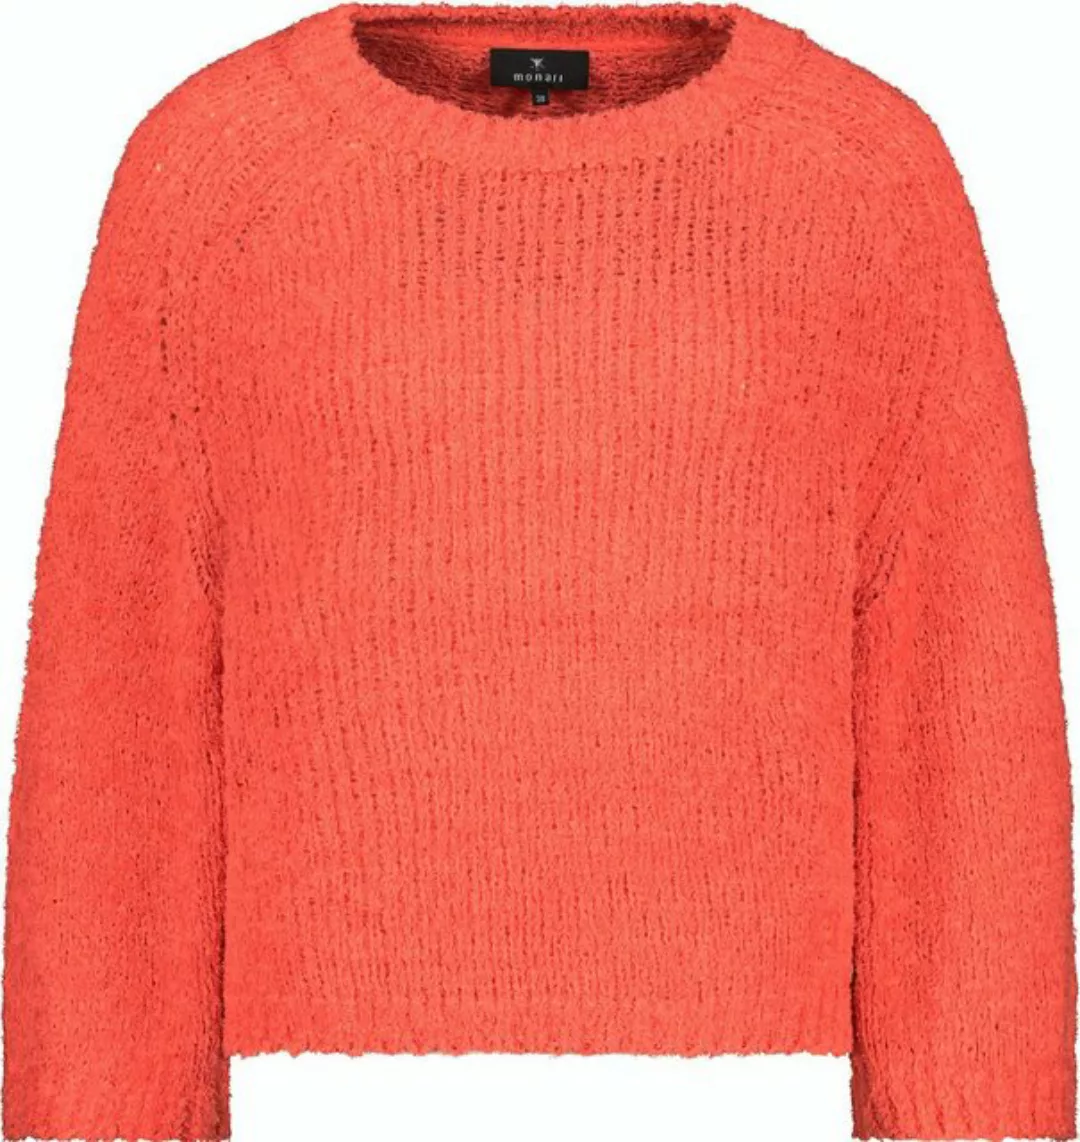 Monari Sweatshirt 408288 lavendel günstig online kaufen